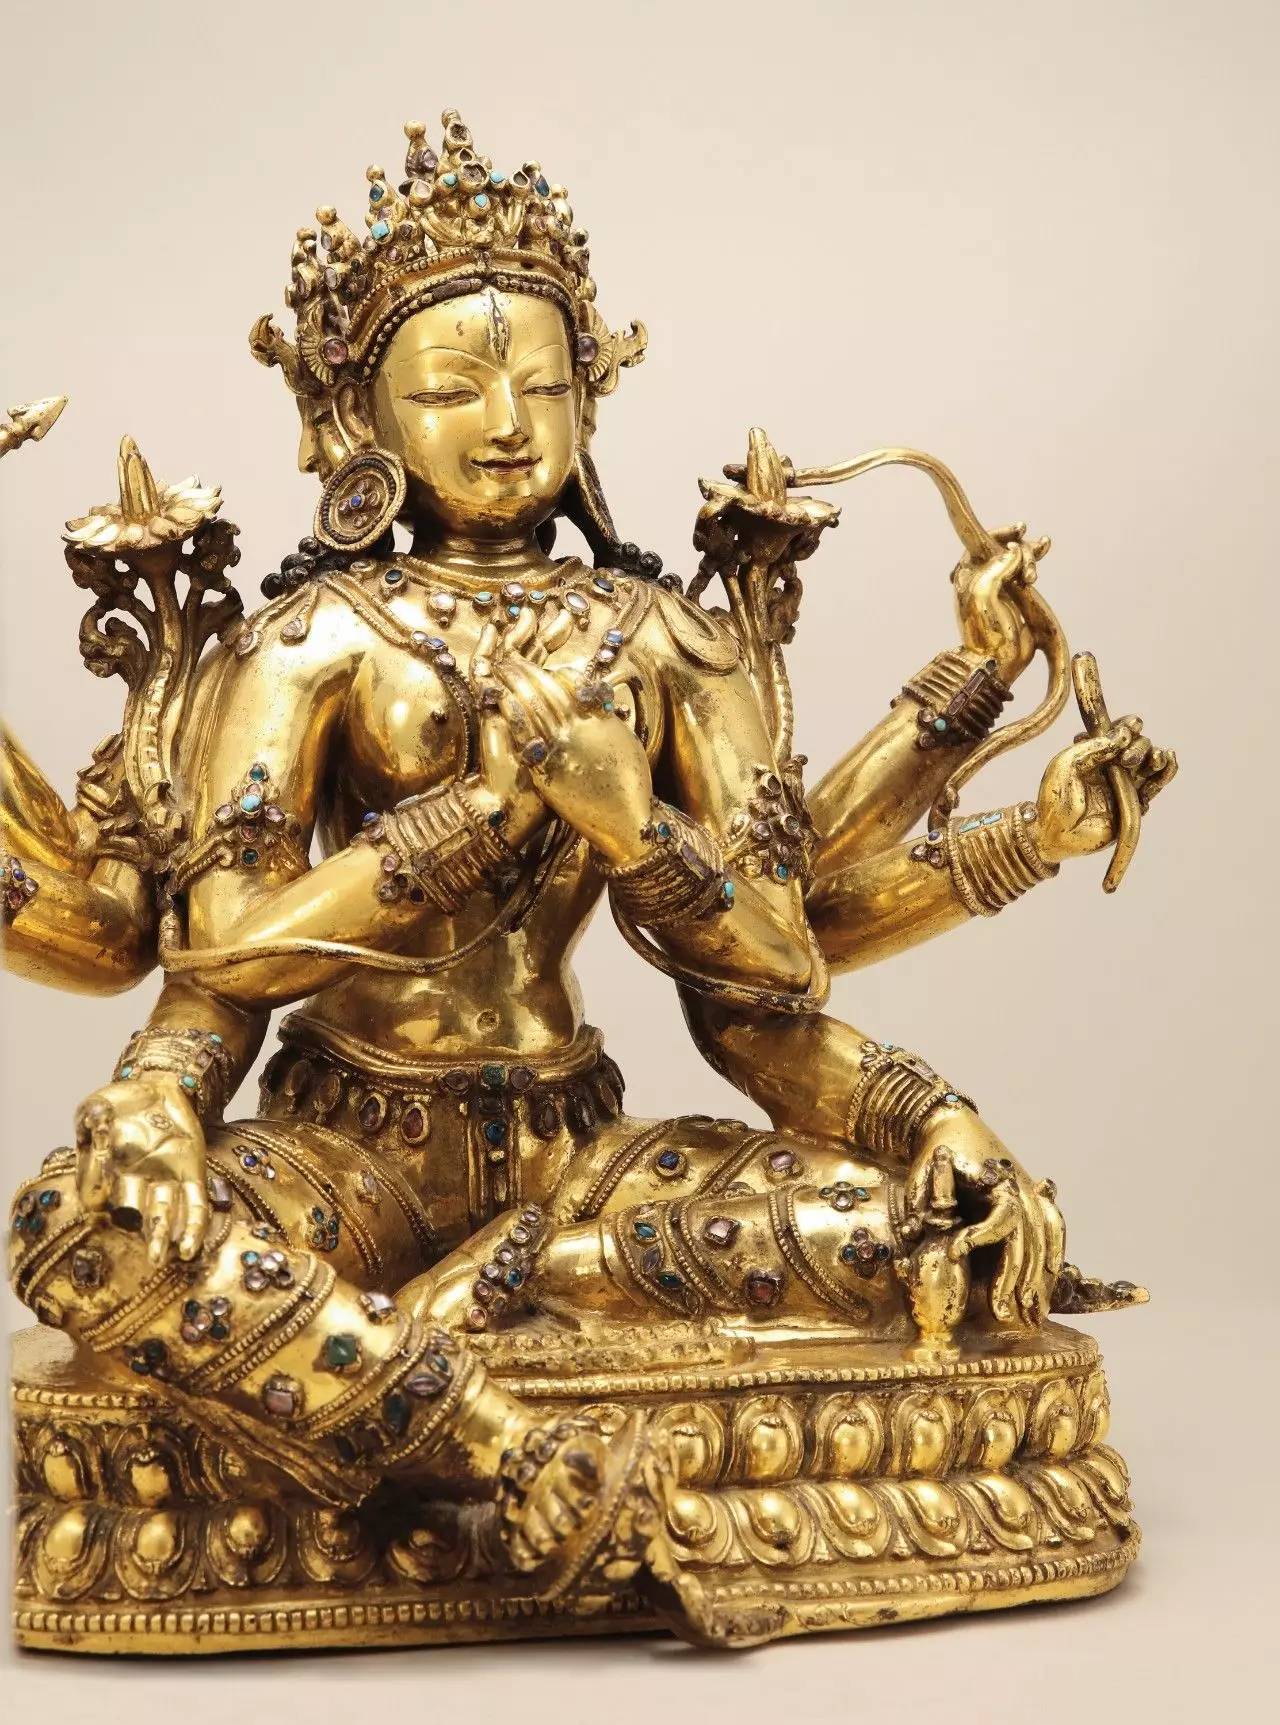 见证西藏帕竹王朝辉煌历史的典范之作 ——西藏丹萨替风格铜镀金大随